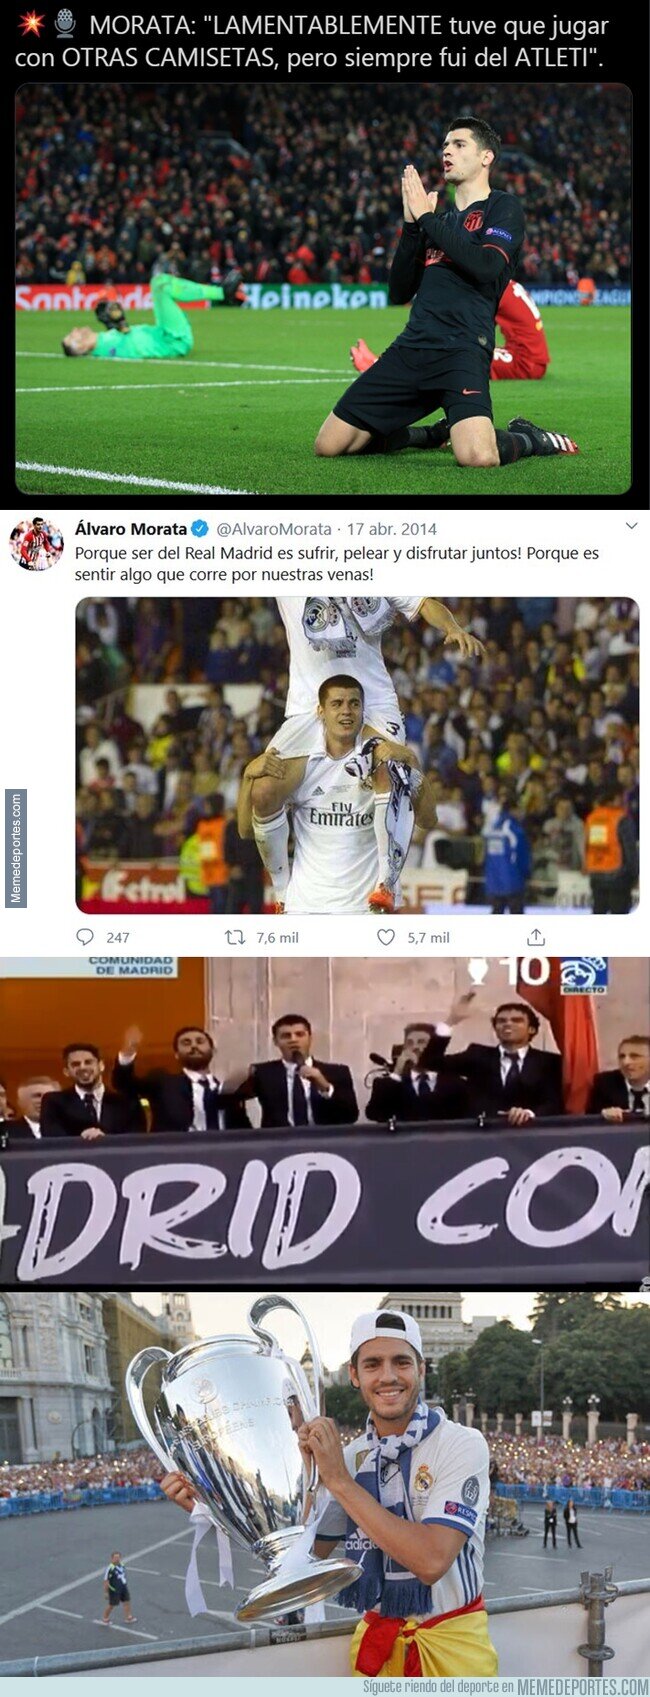 1102882 - Las polémicas declaraciones de Álvaro Morata sobre su pasado futbolístico